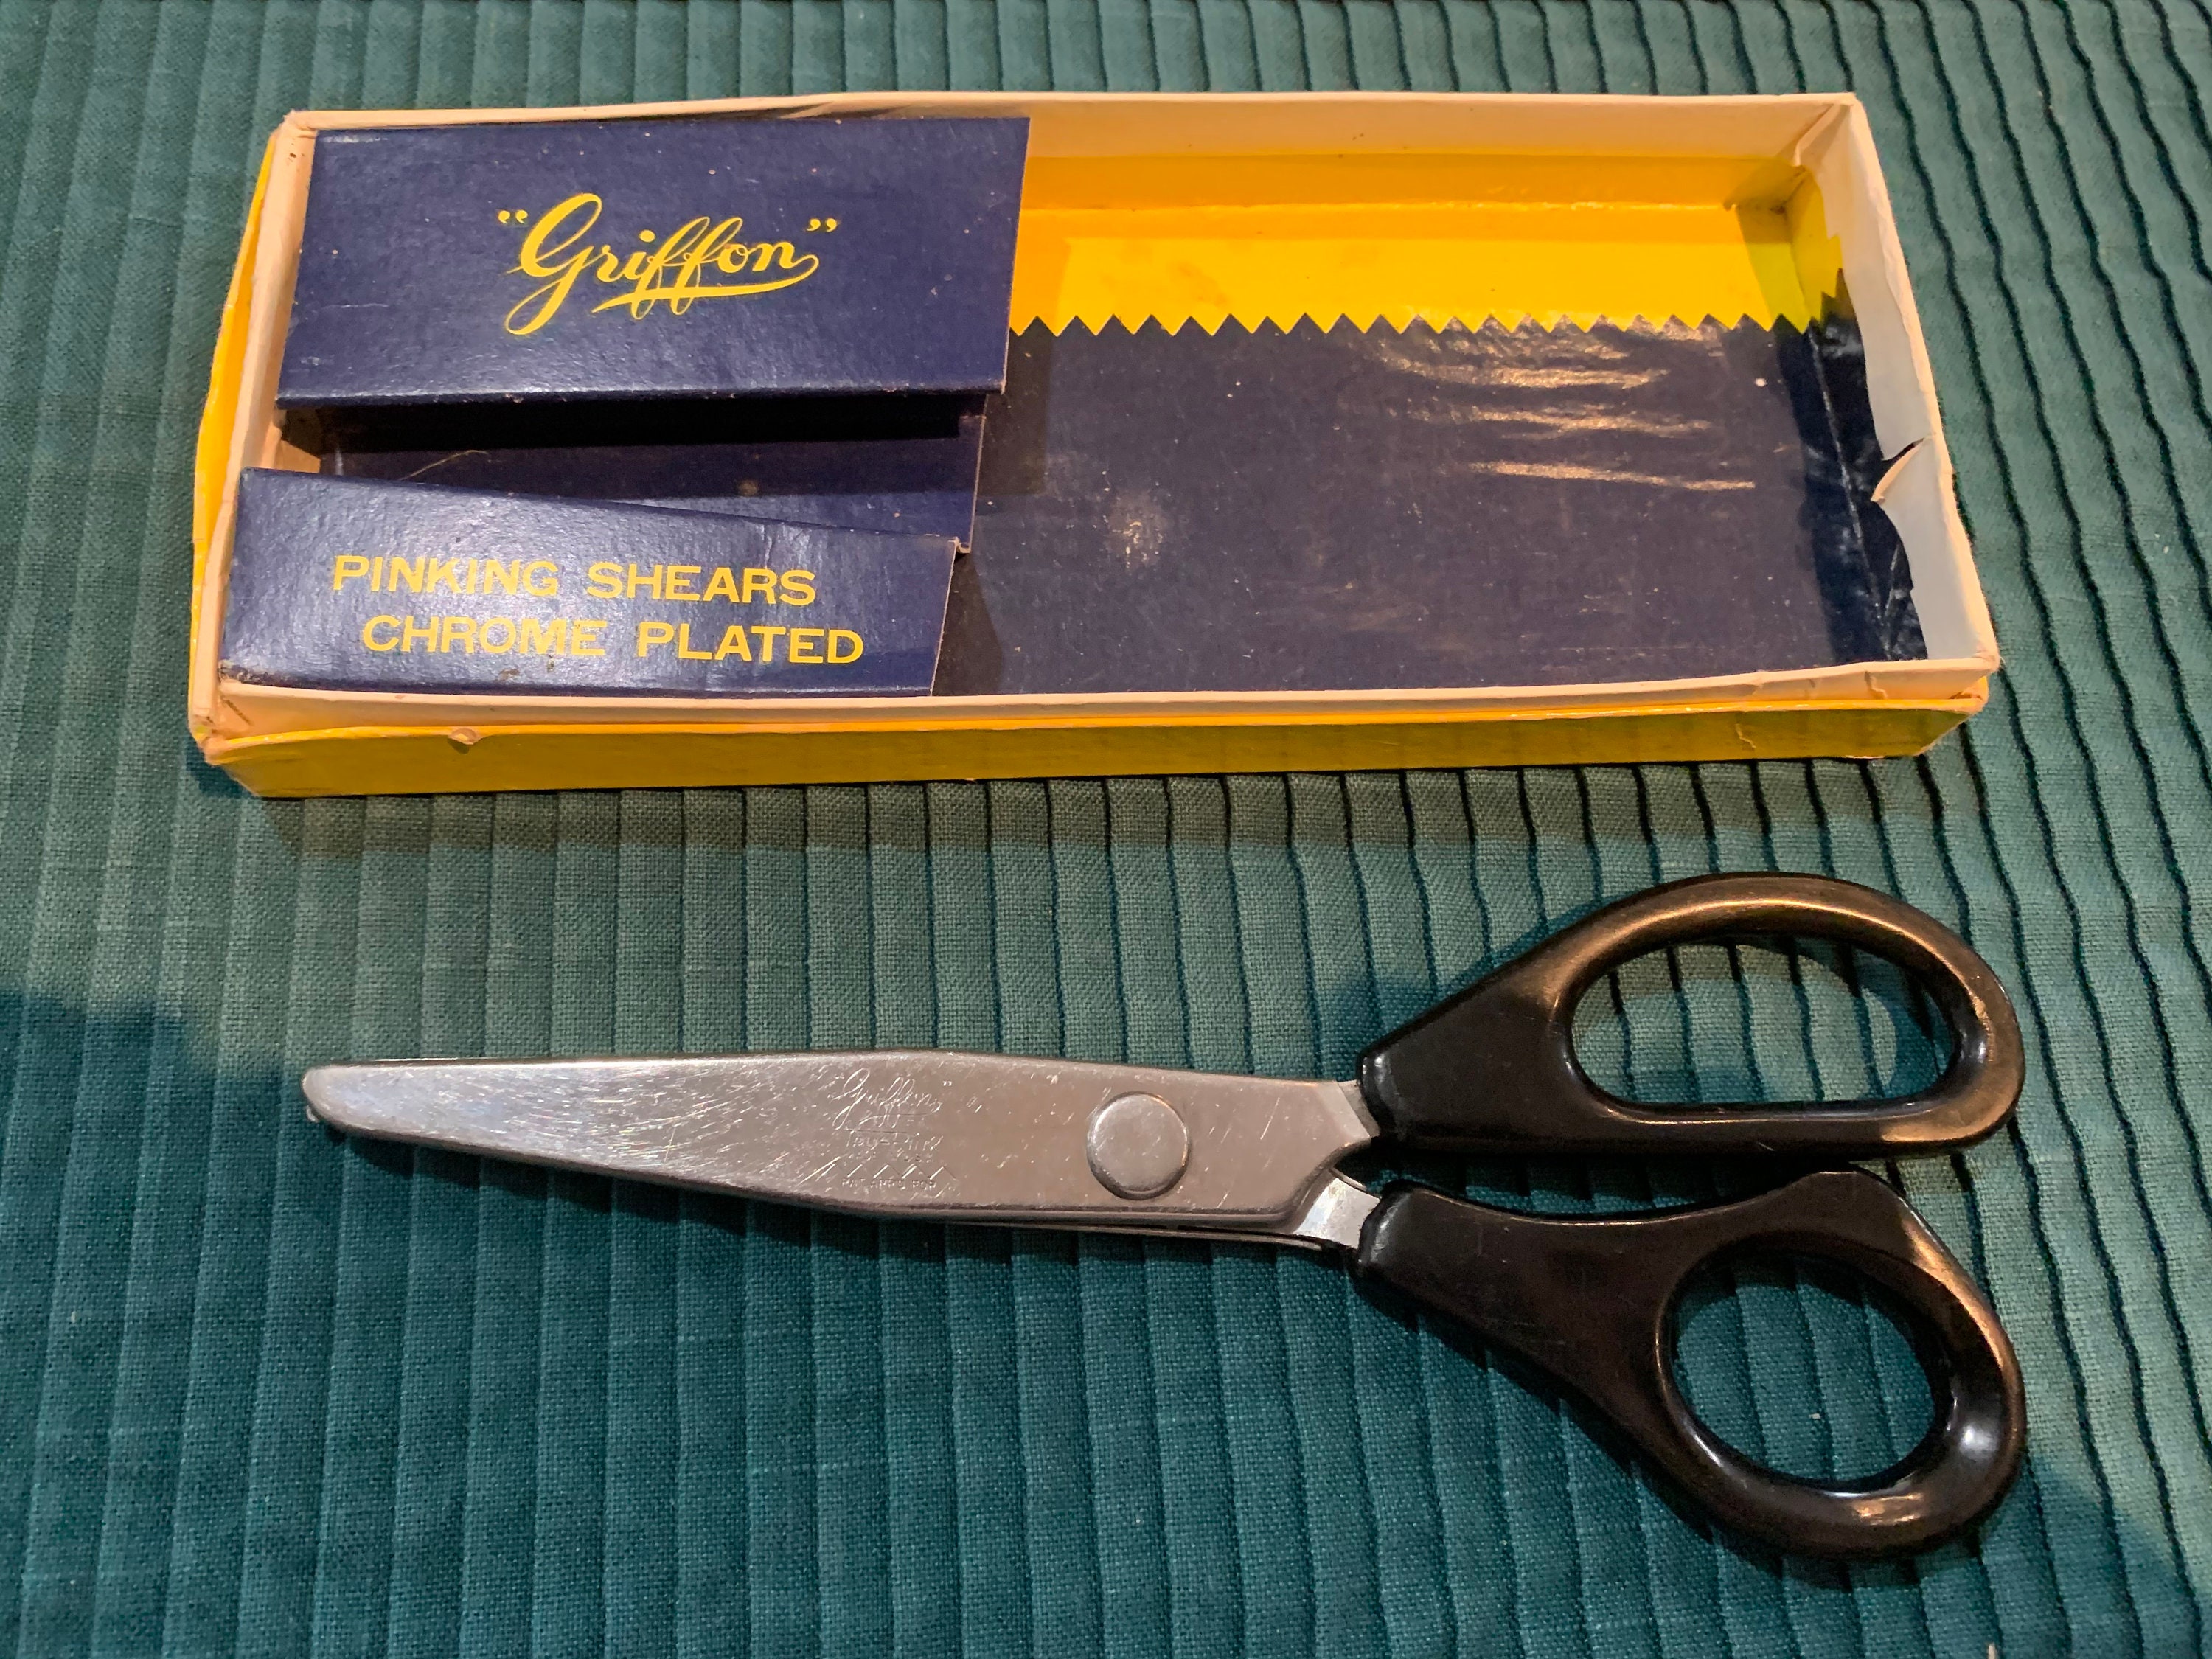 Griffon Cutlery 8 Zig Zag Scissors Pinking Shears Made in Japan